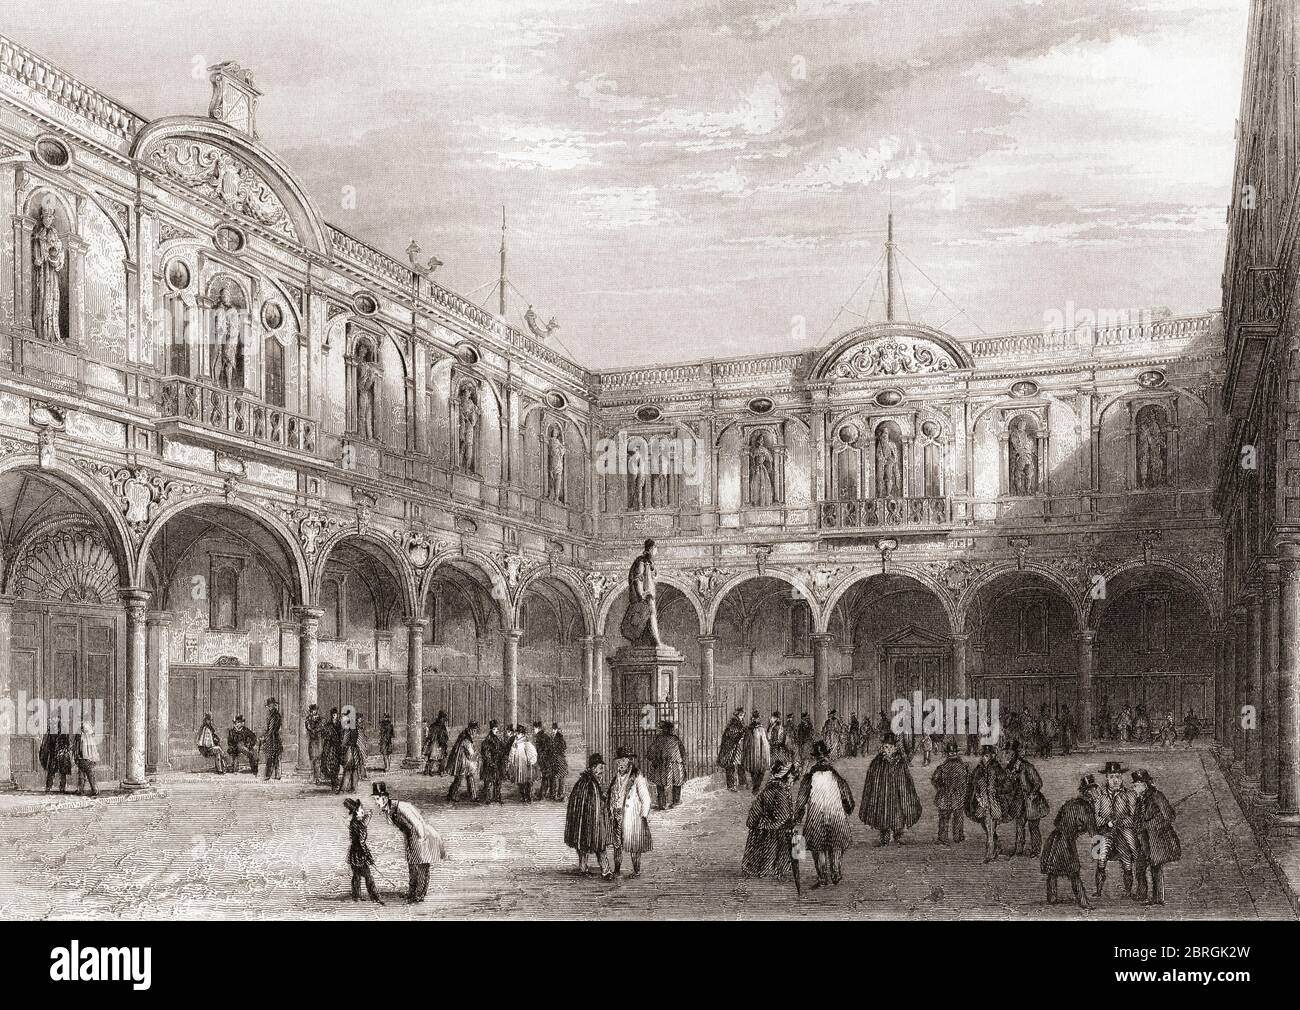 Royal Exchange, Londra, Inghilterra, XIX secolo. Questo edificio fu distrutto da un incendio nel 1838. Dalla storia di Londra: Illustrato dalle viste a Londra e a Westminster, pubblicato intorno al 1838. Foto Stock